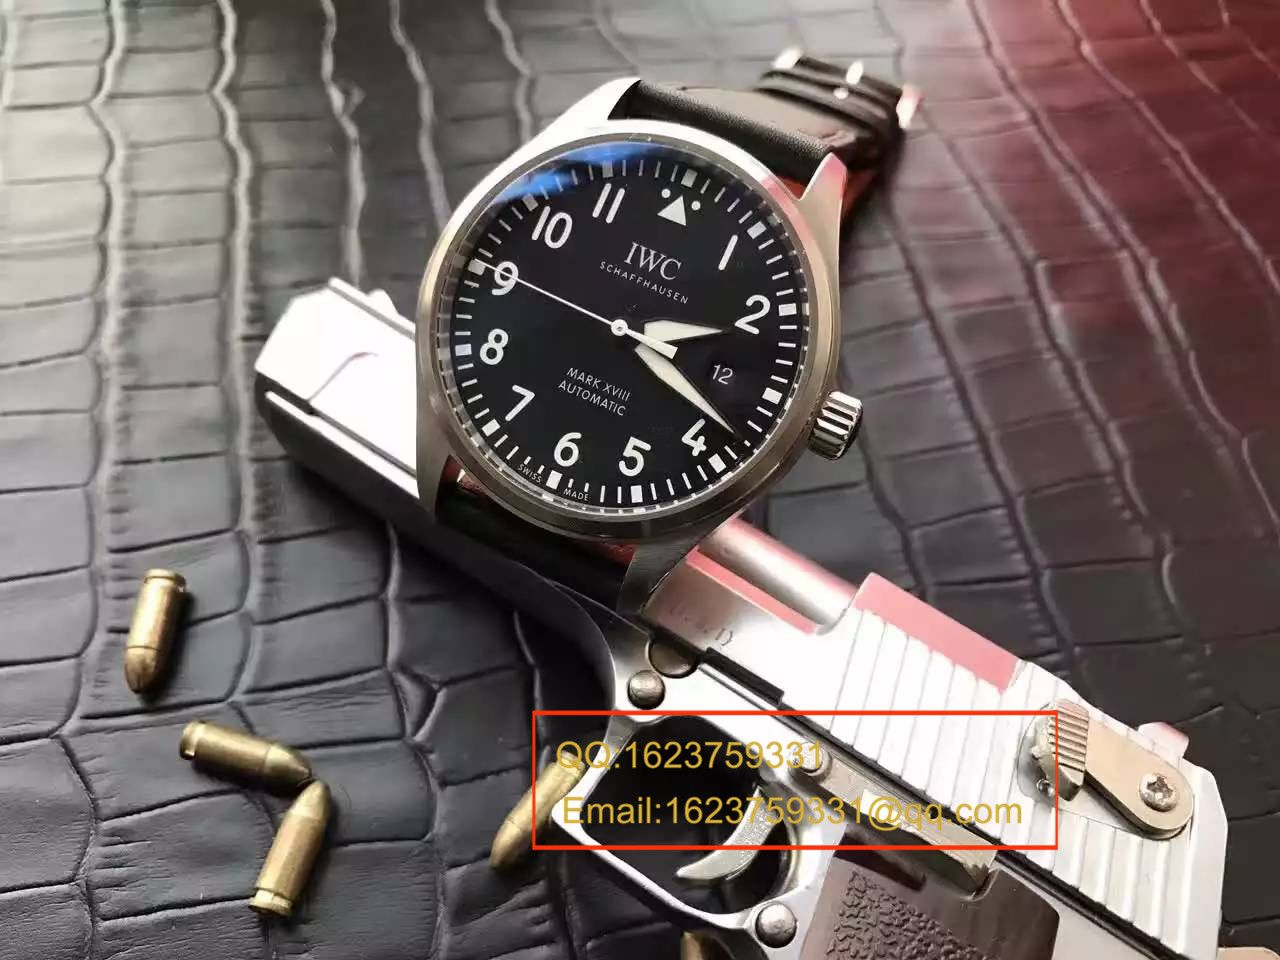 【独家视频测评MK厂超A精仿手表】万国飞行员马克十八飞行员腕表系列 IW327001腕表 / WG246